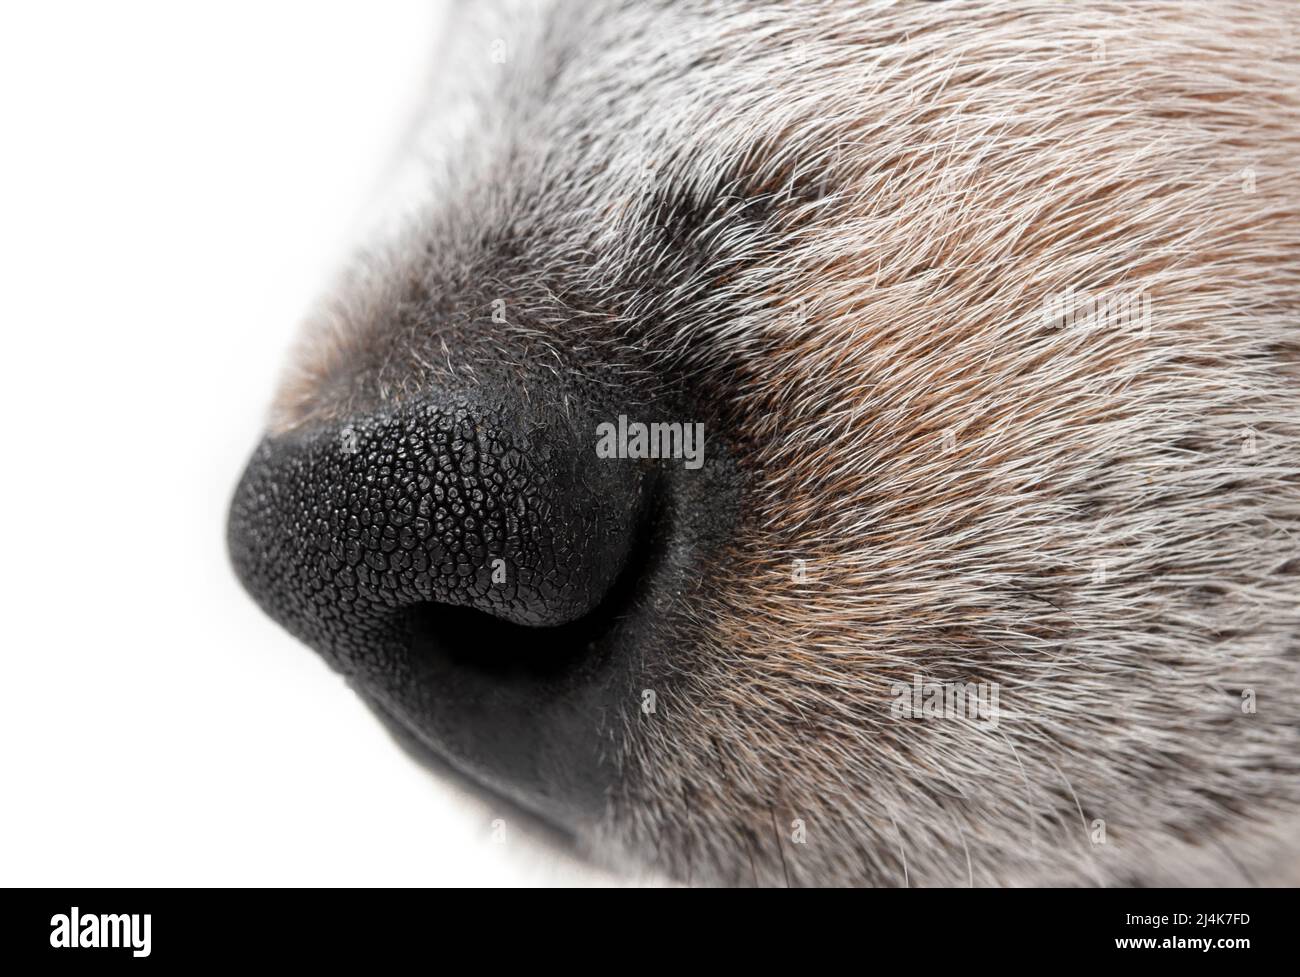 Profil latéral de nez de chien, gros plan. Profil latéral de chien noir et blanc avec nez noir. chiot heeler bleu de 9 semaines. Macro de chien à cheveux courts Banque D'Images